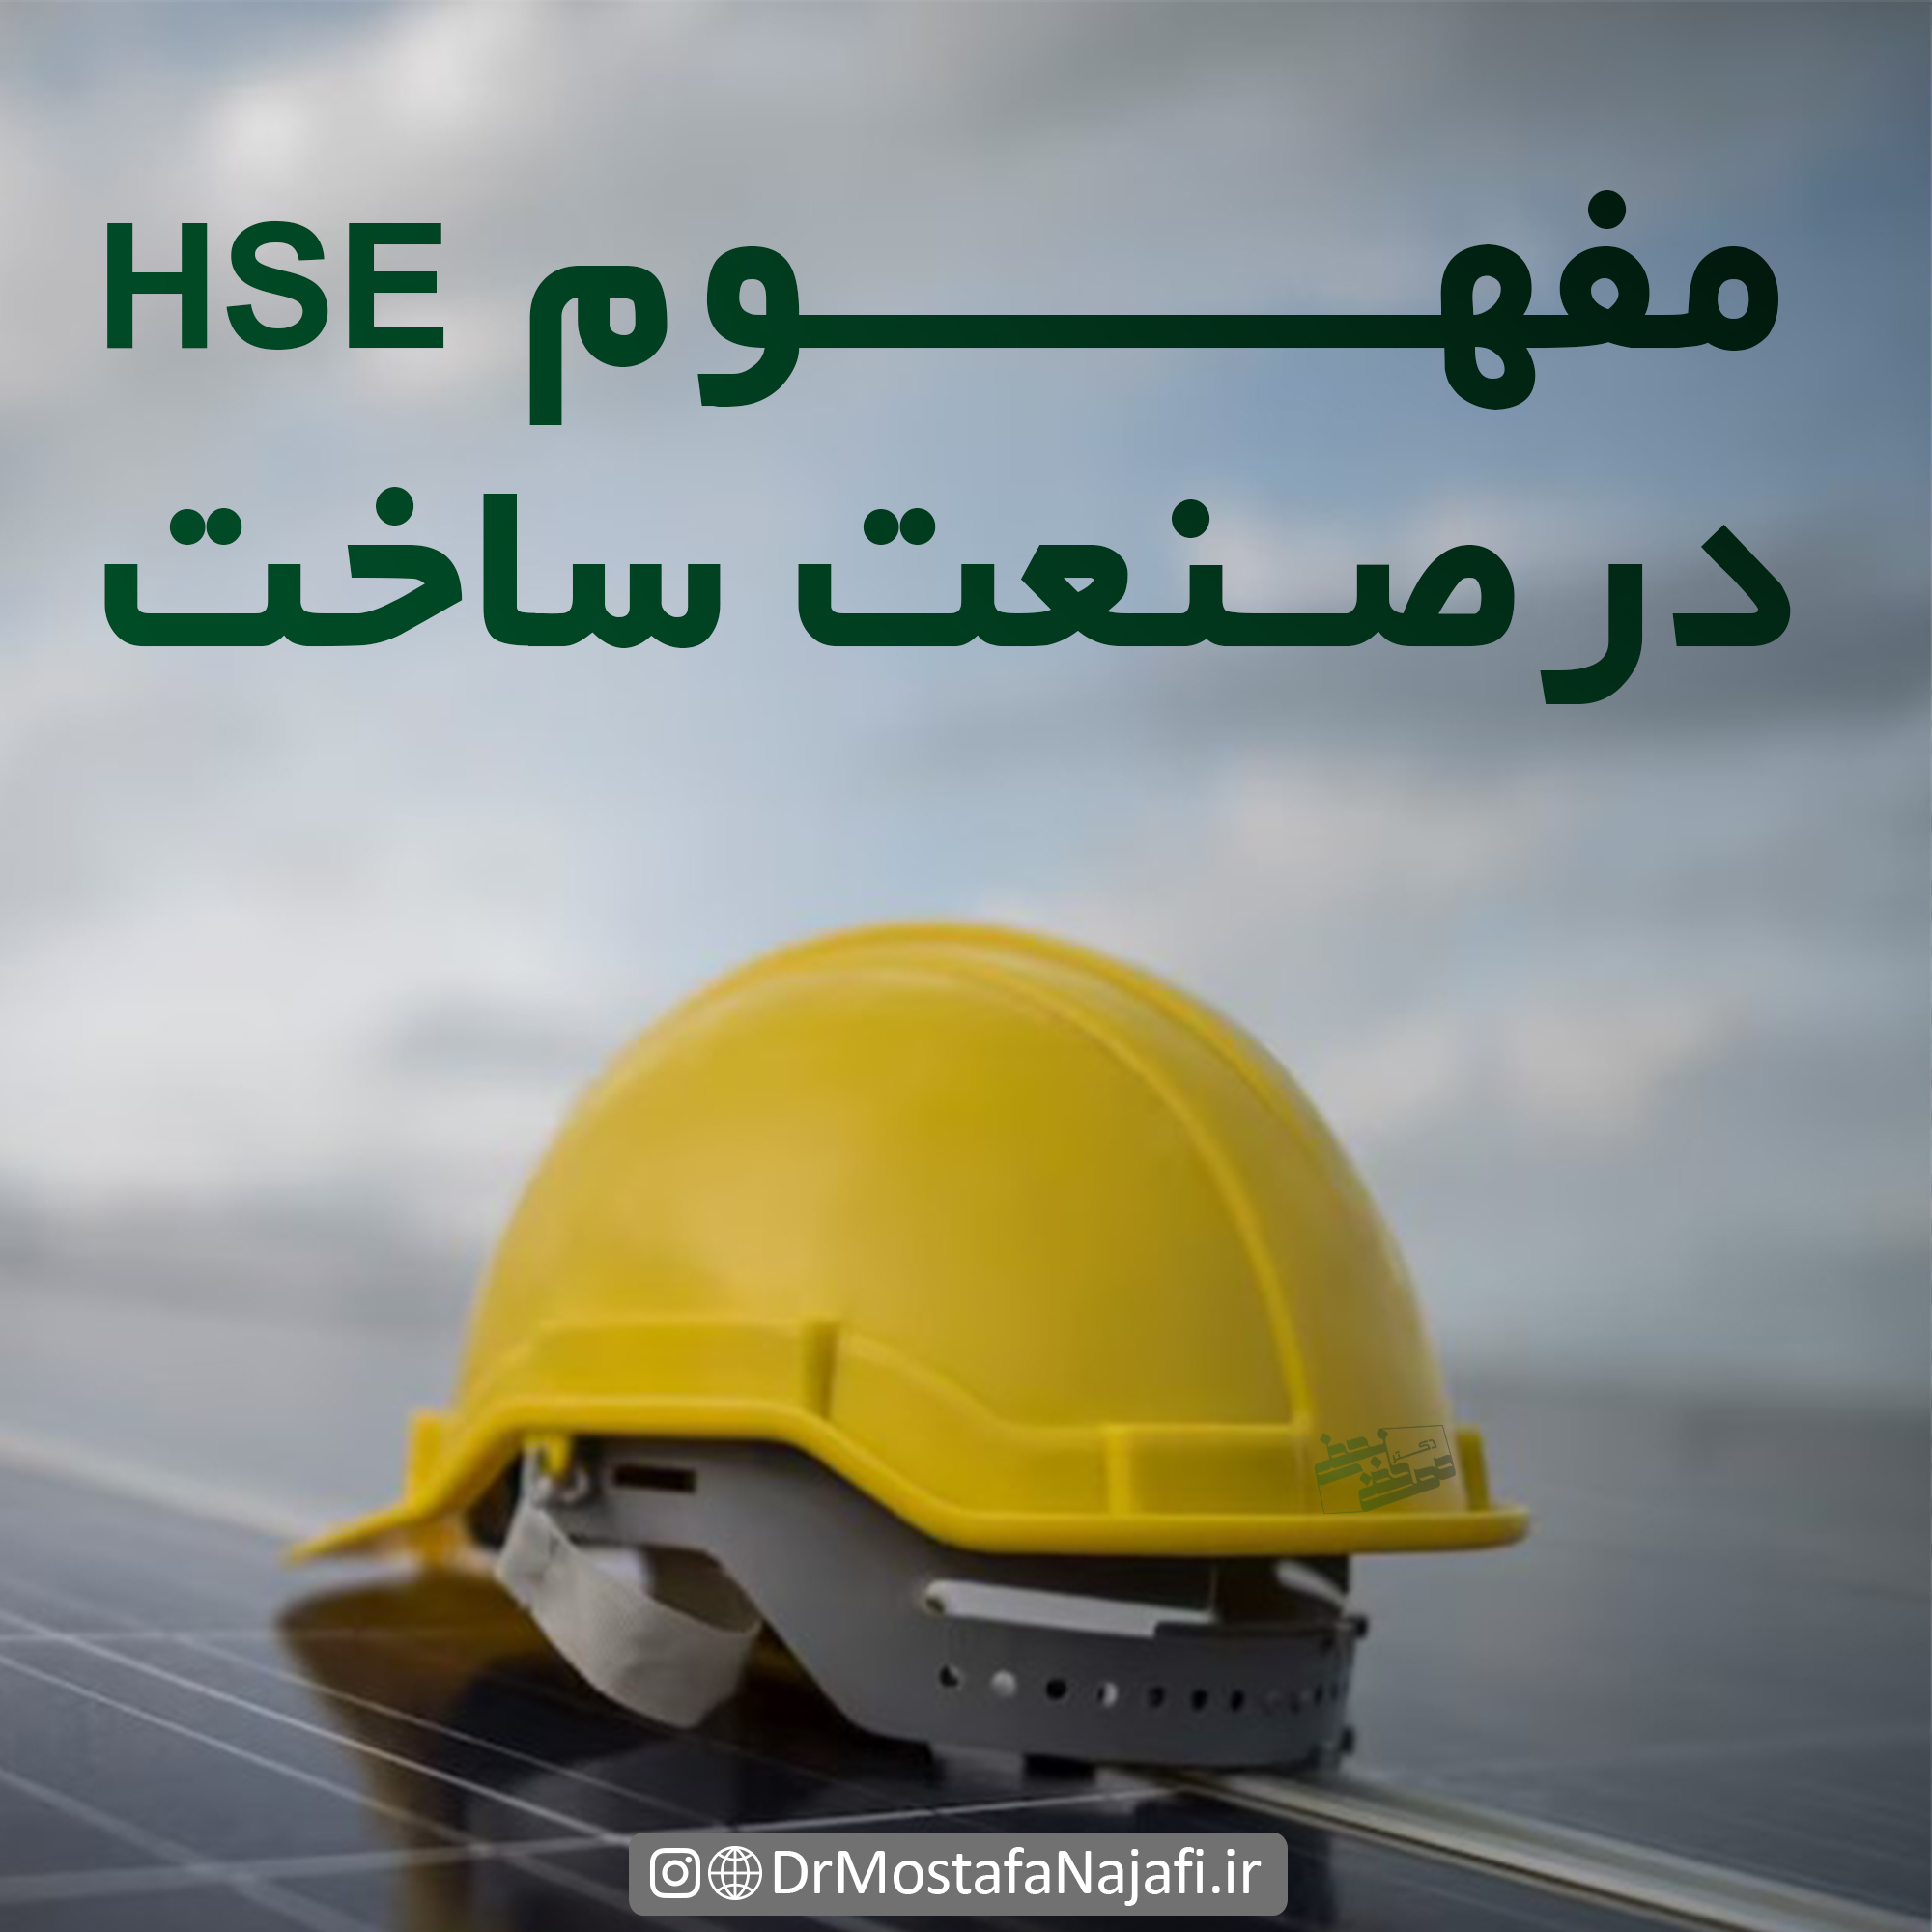 مفهوم HSE در صنعت ساخت